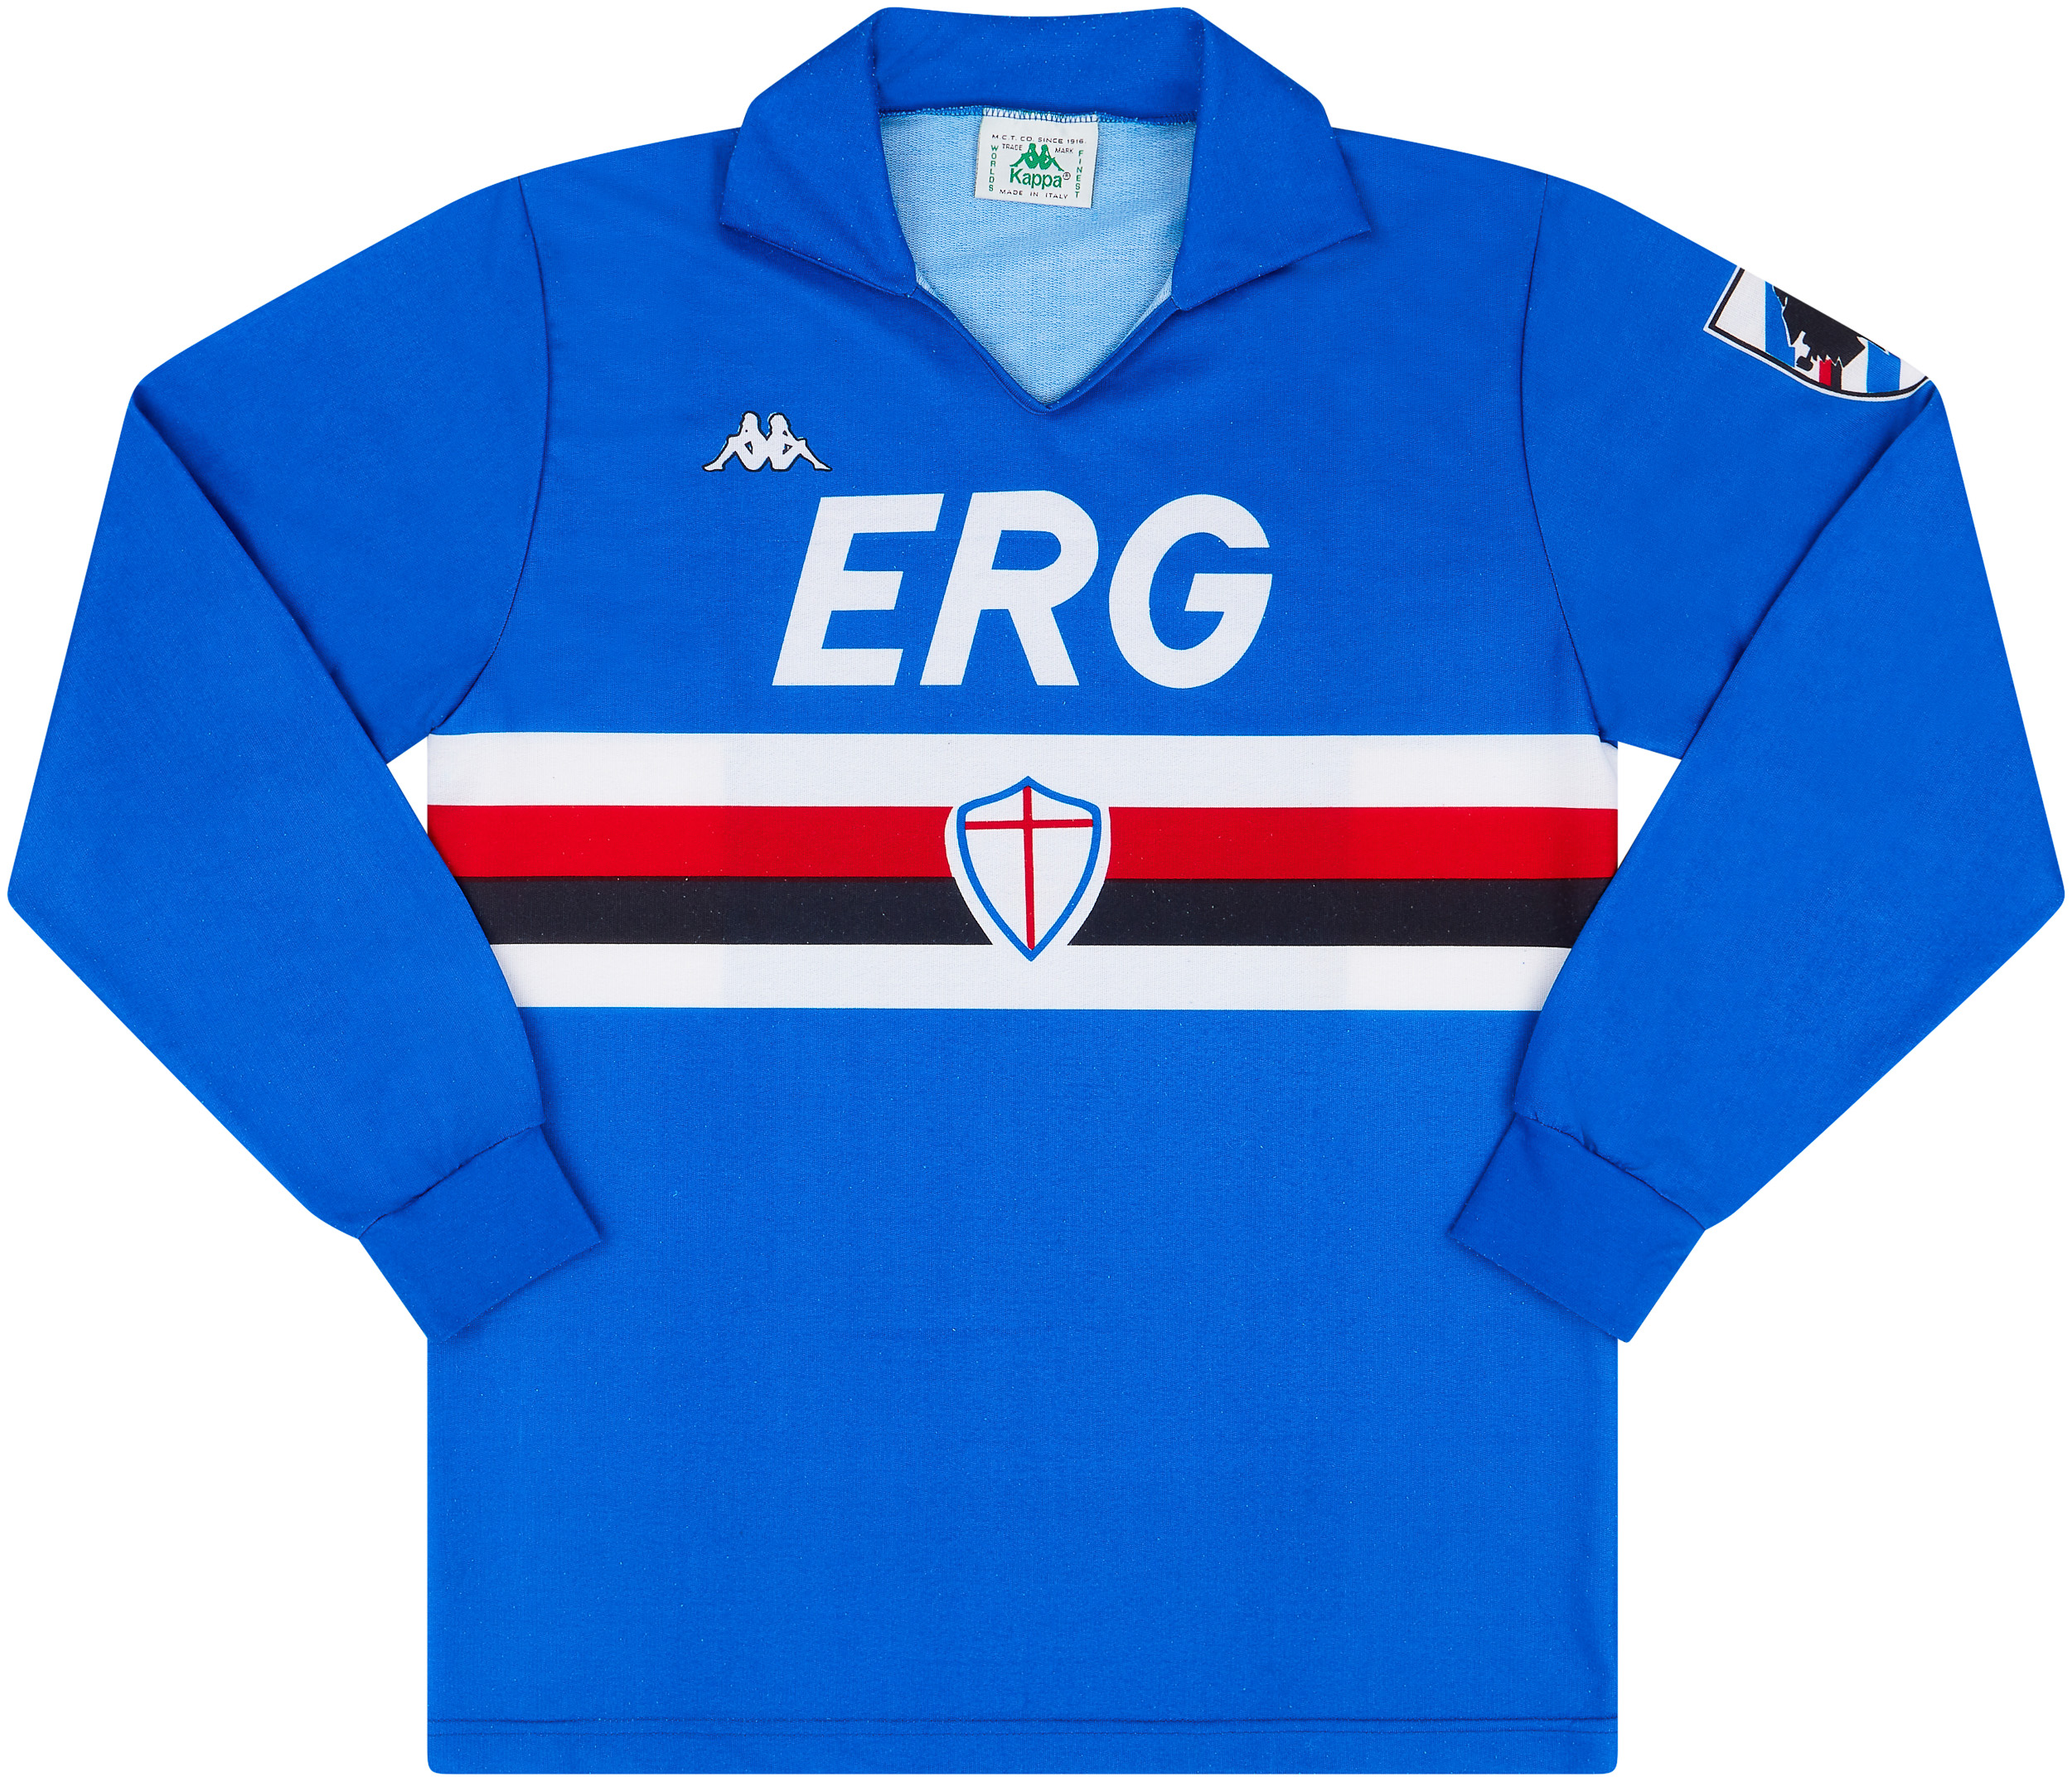 1989-90 Sampdoria Home Shirt - 9/10 - ()